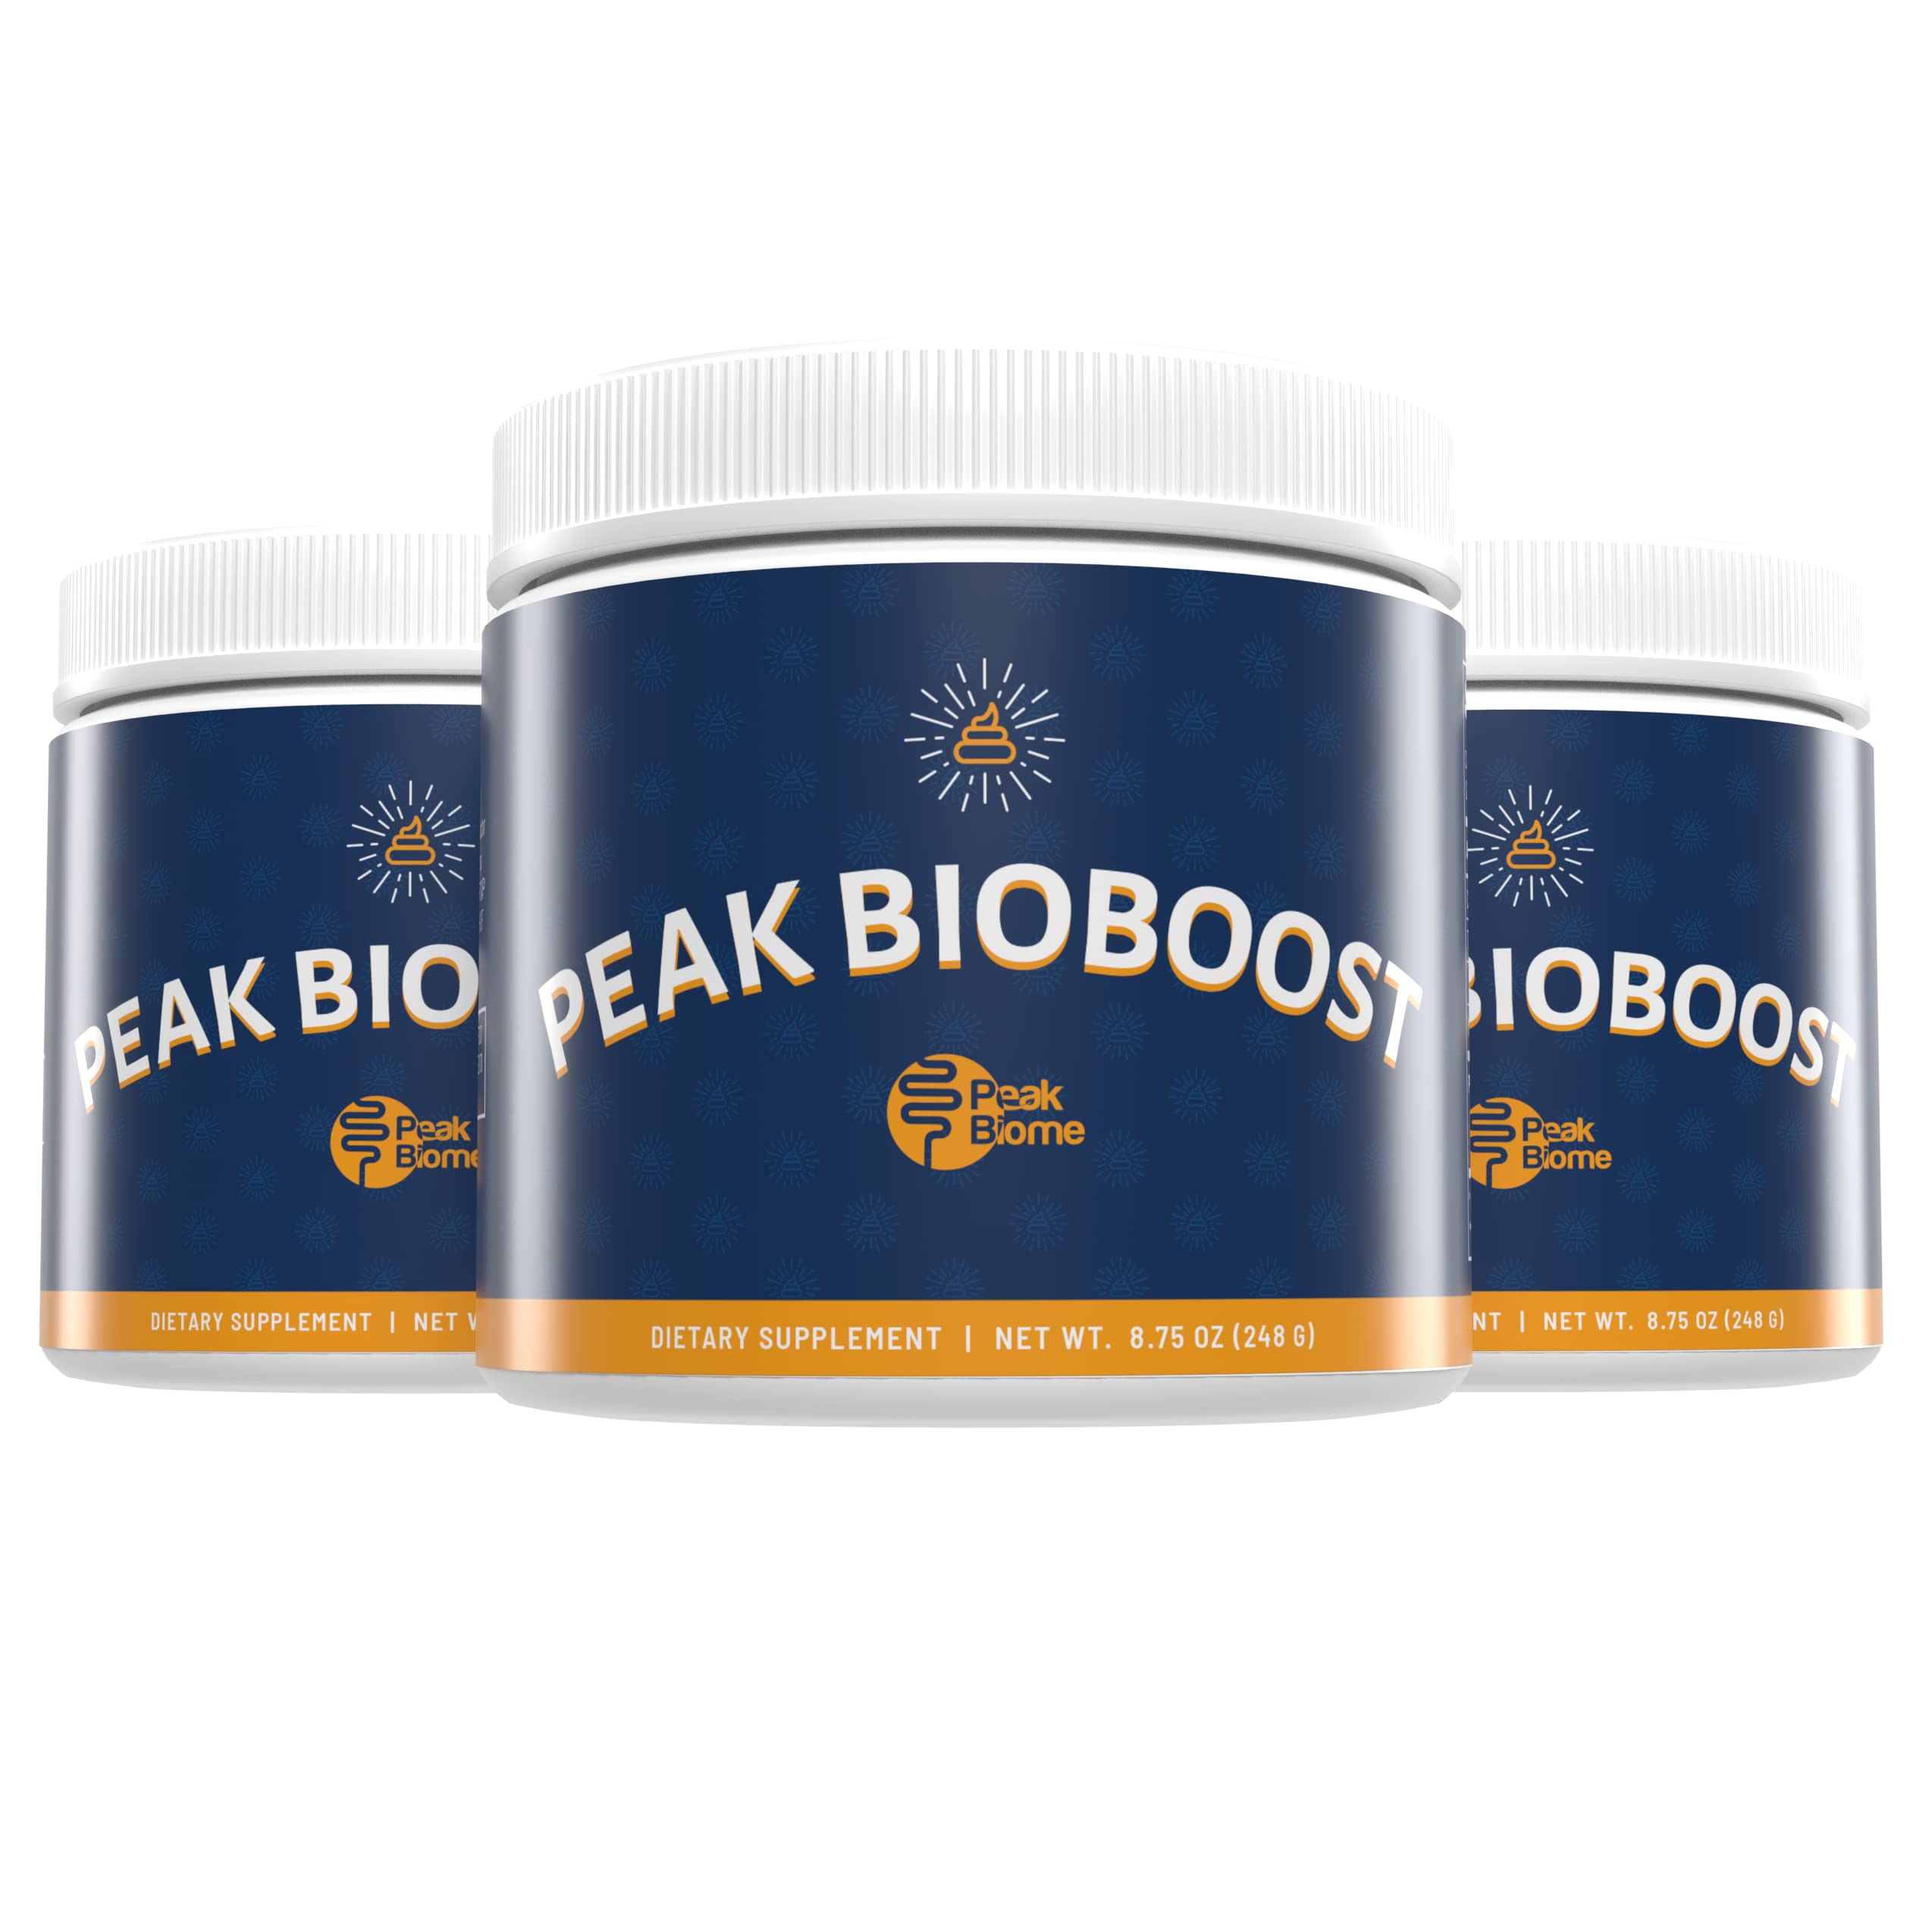 what is in peak bioboost